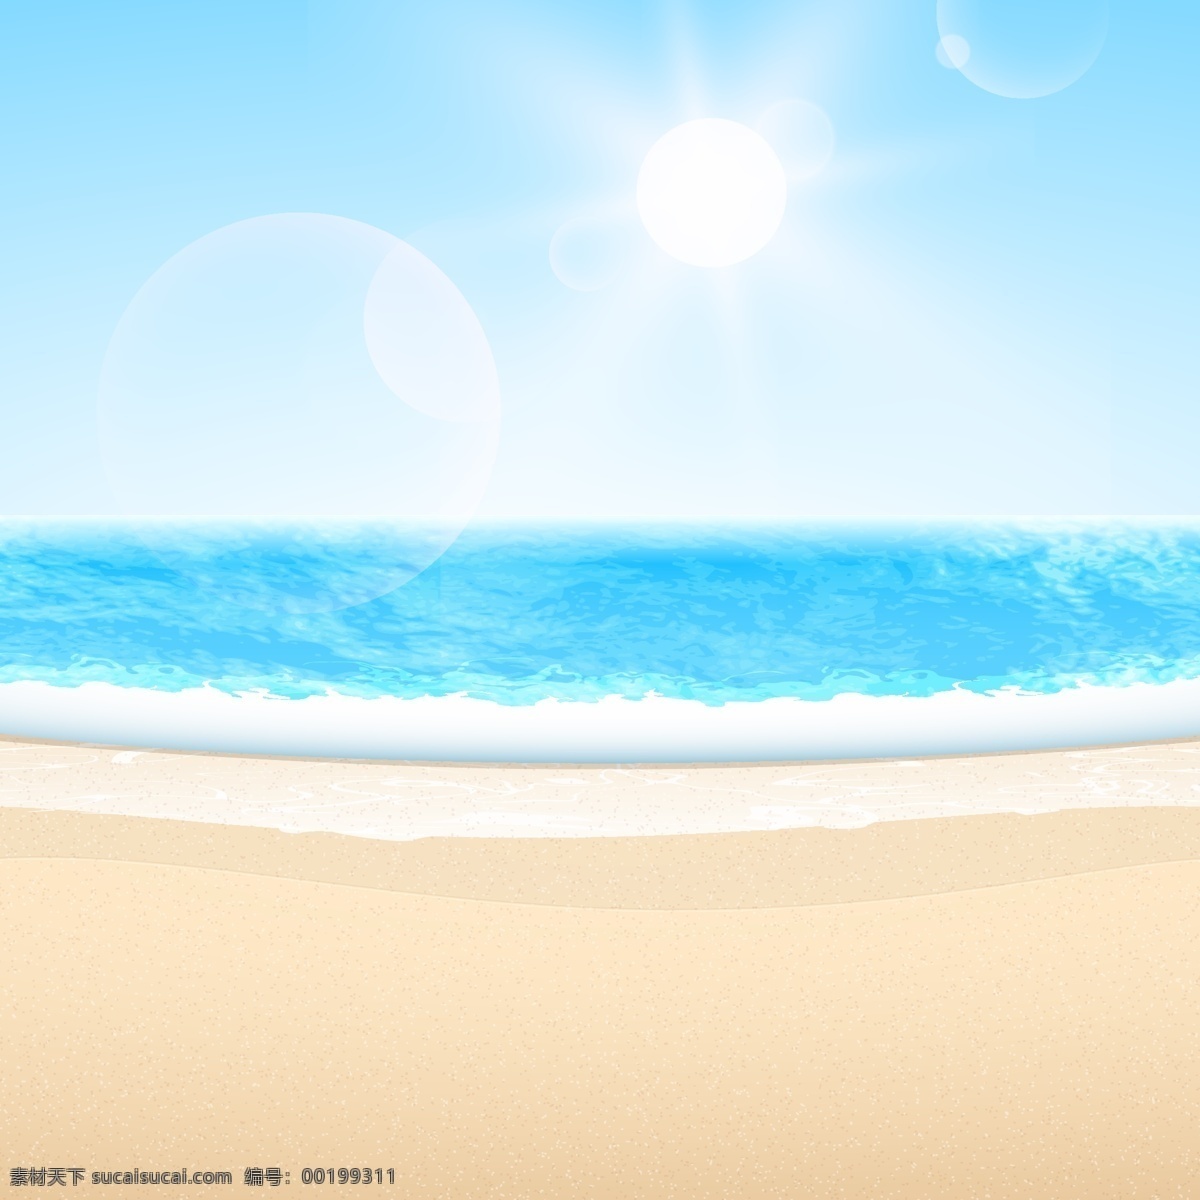 矢量 海洋 风景 沙滩 阳光 夏日 背景 蓝色 大海 浪花 清新 清爽 文艺 小清新 简约